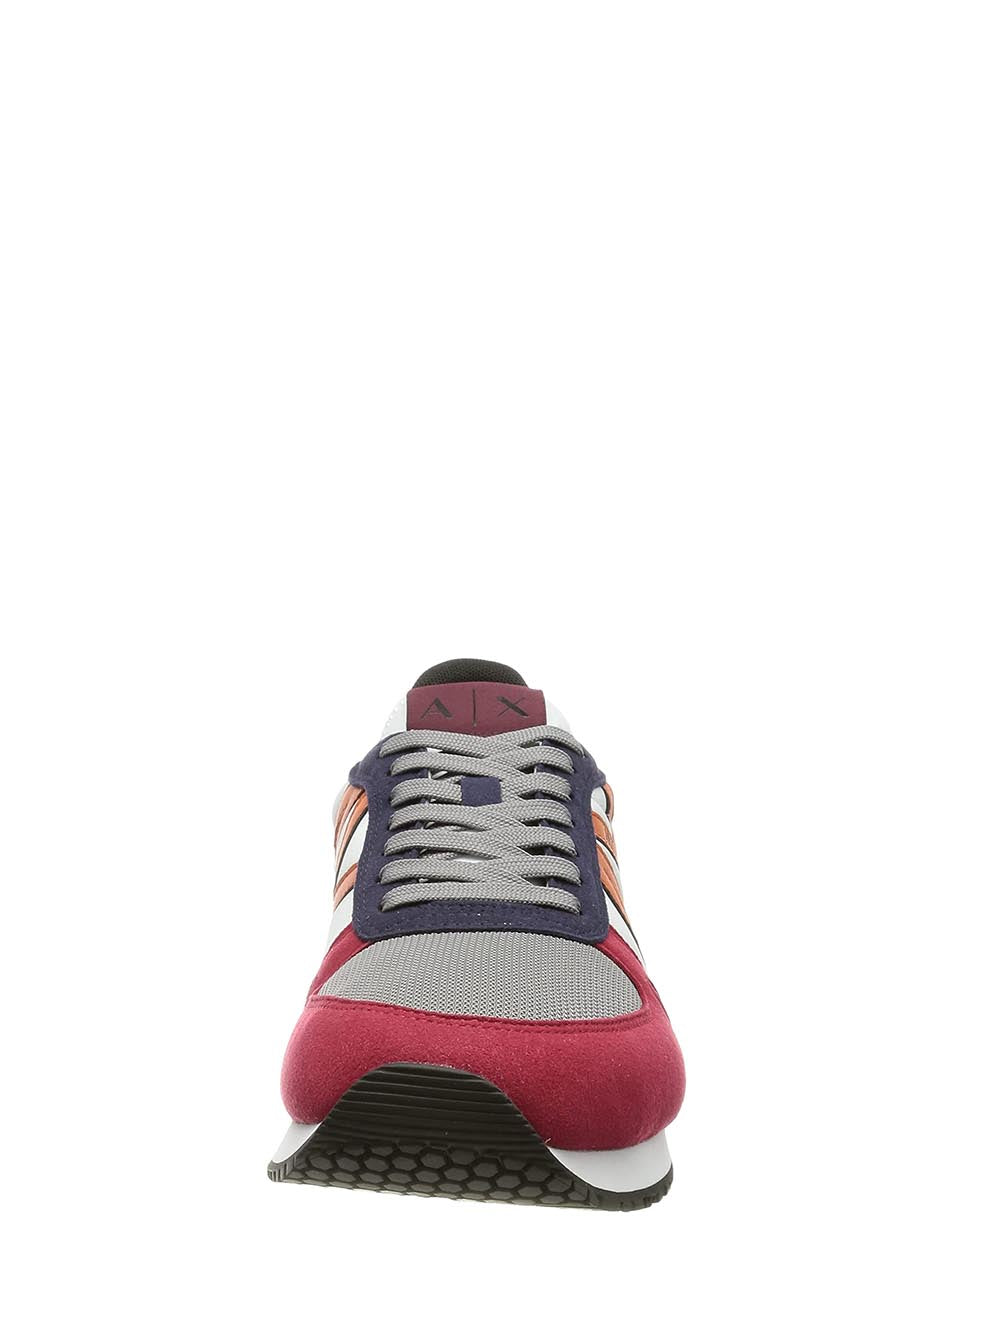 ARMANI EXCHANGE Sneakers Uomo Multicolor